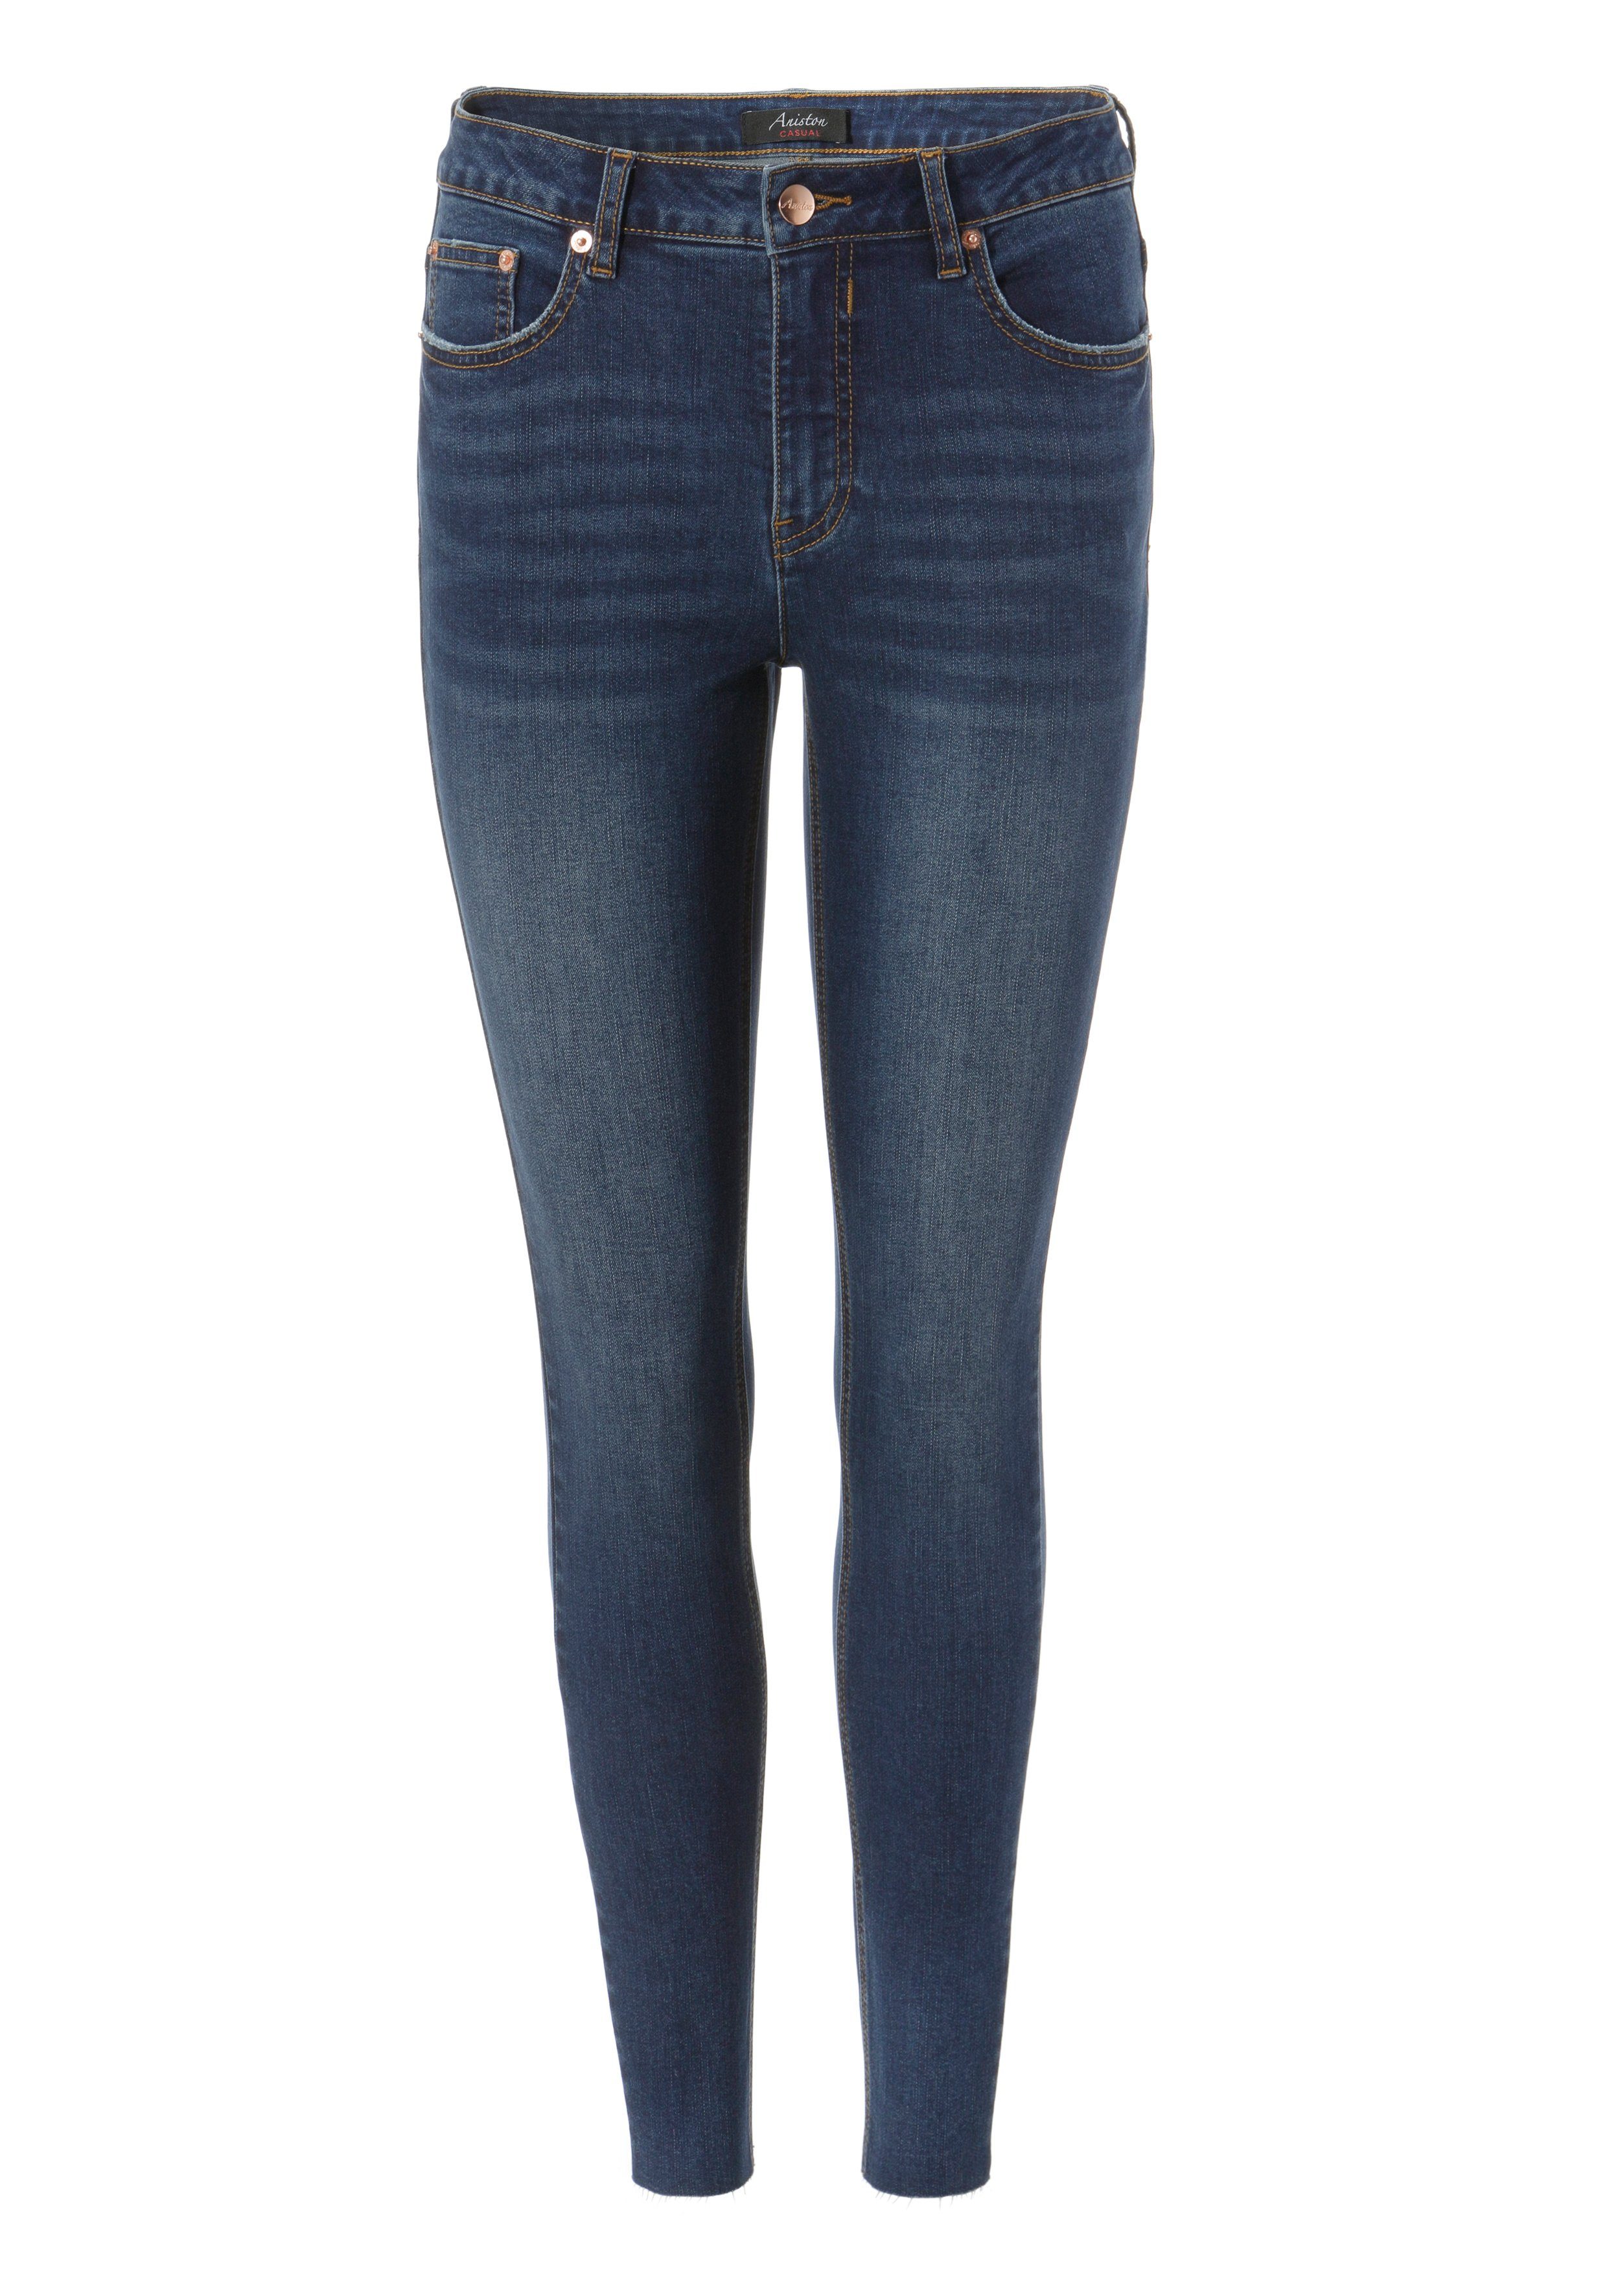 ausgefransten CASUAL waist darkblue mit Aniston - Beinabschluss Skinny-fit-Jeans regular